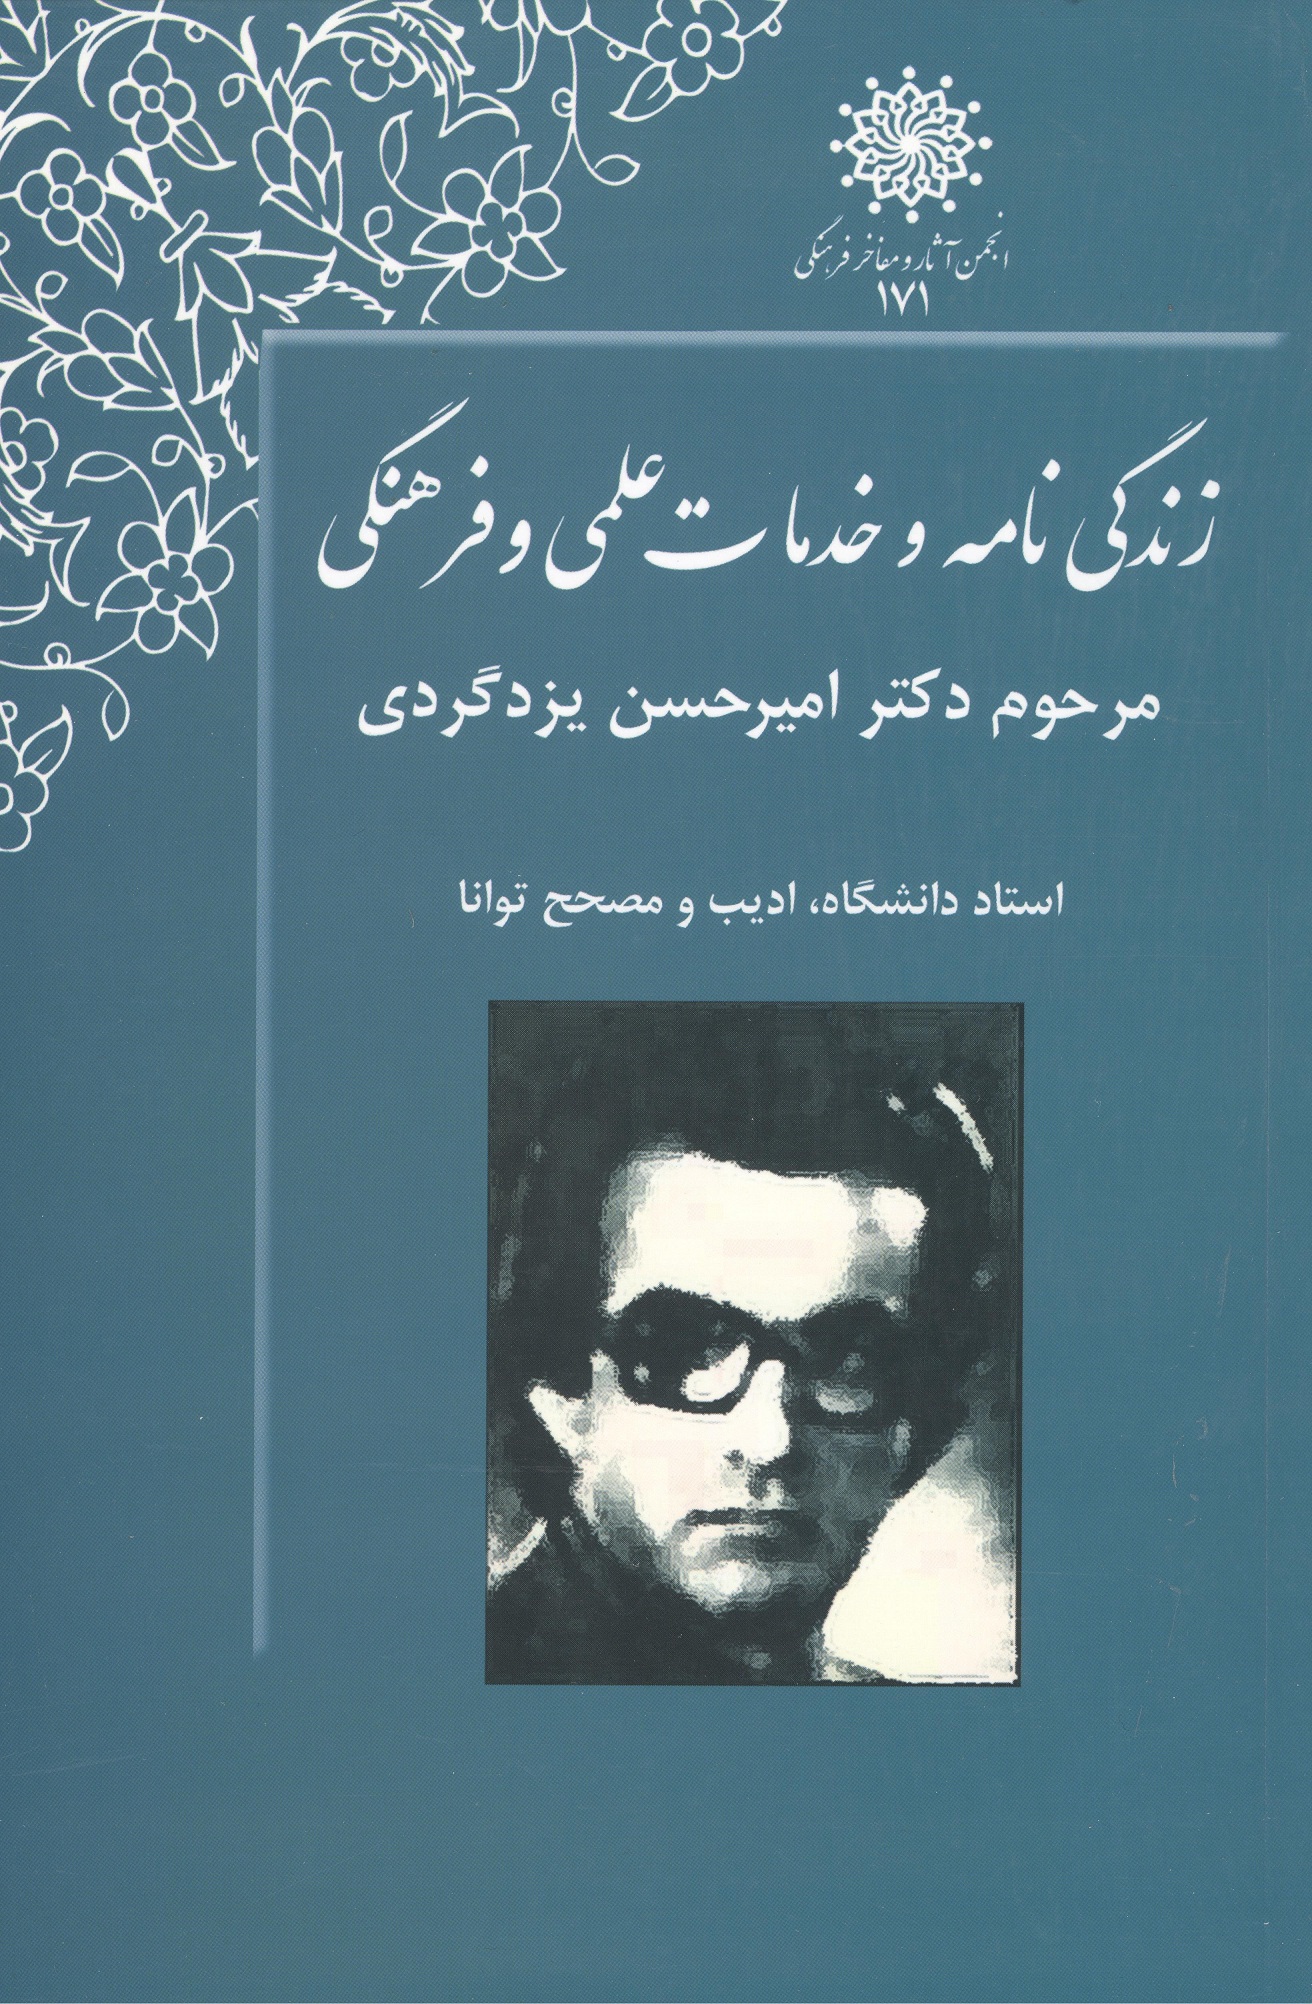 زندگی نامه و خدمات علمی و فرهنگی دکتر امیر حسن یزدگردی